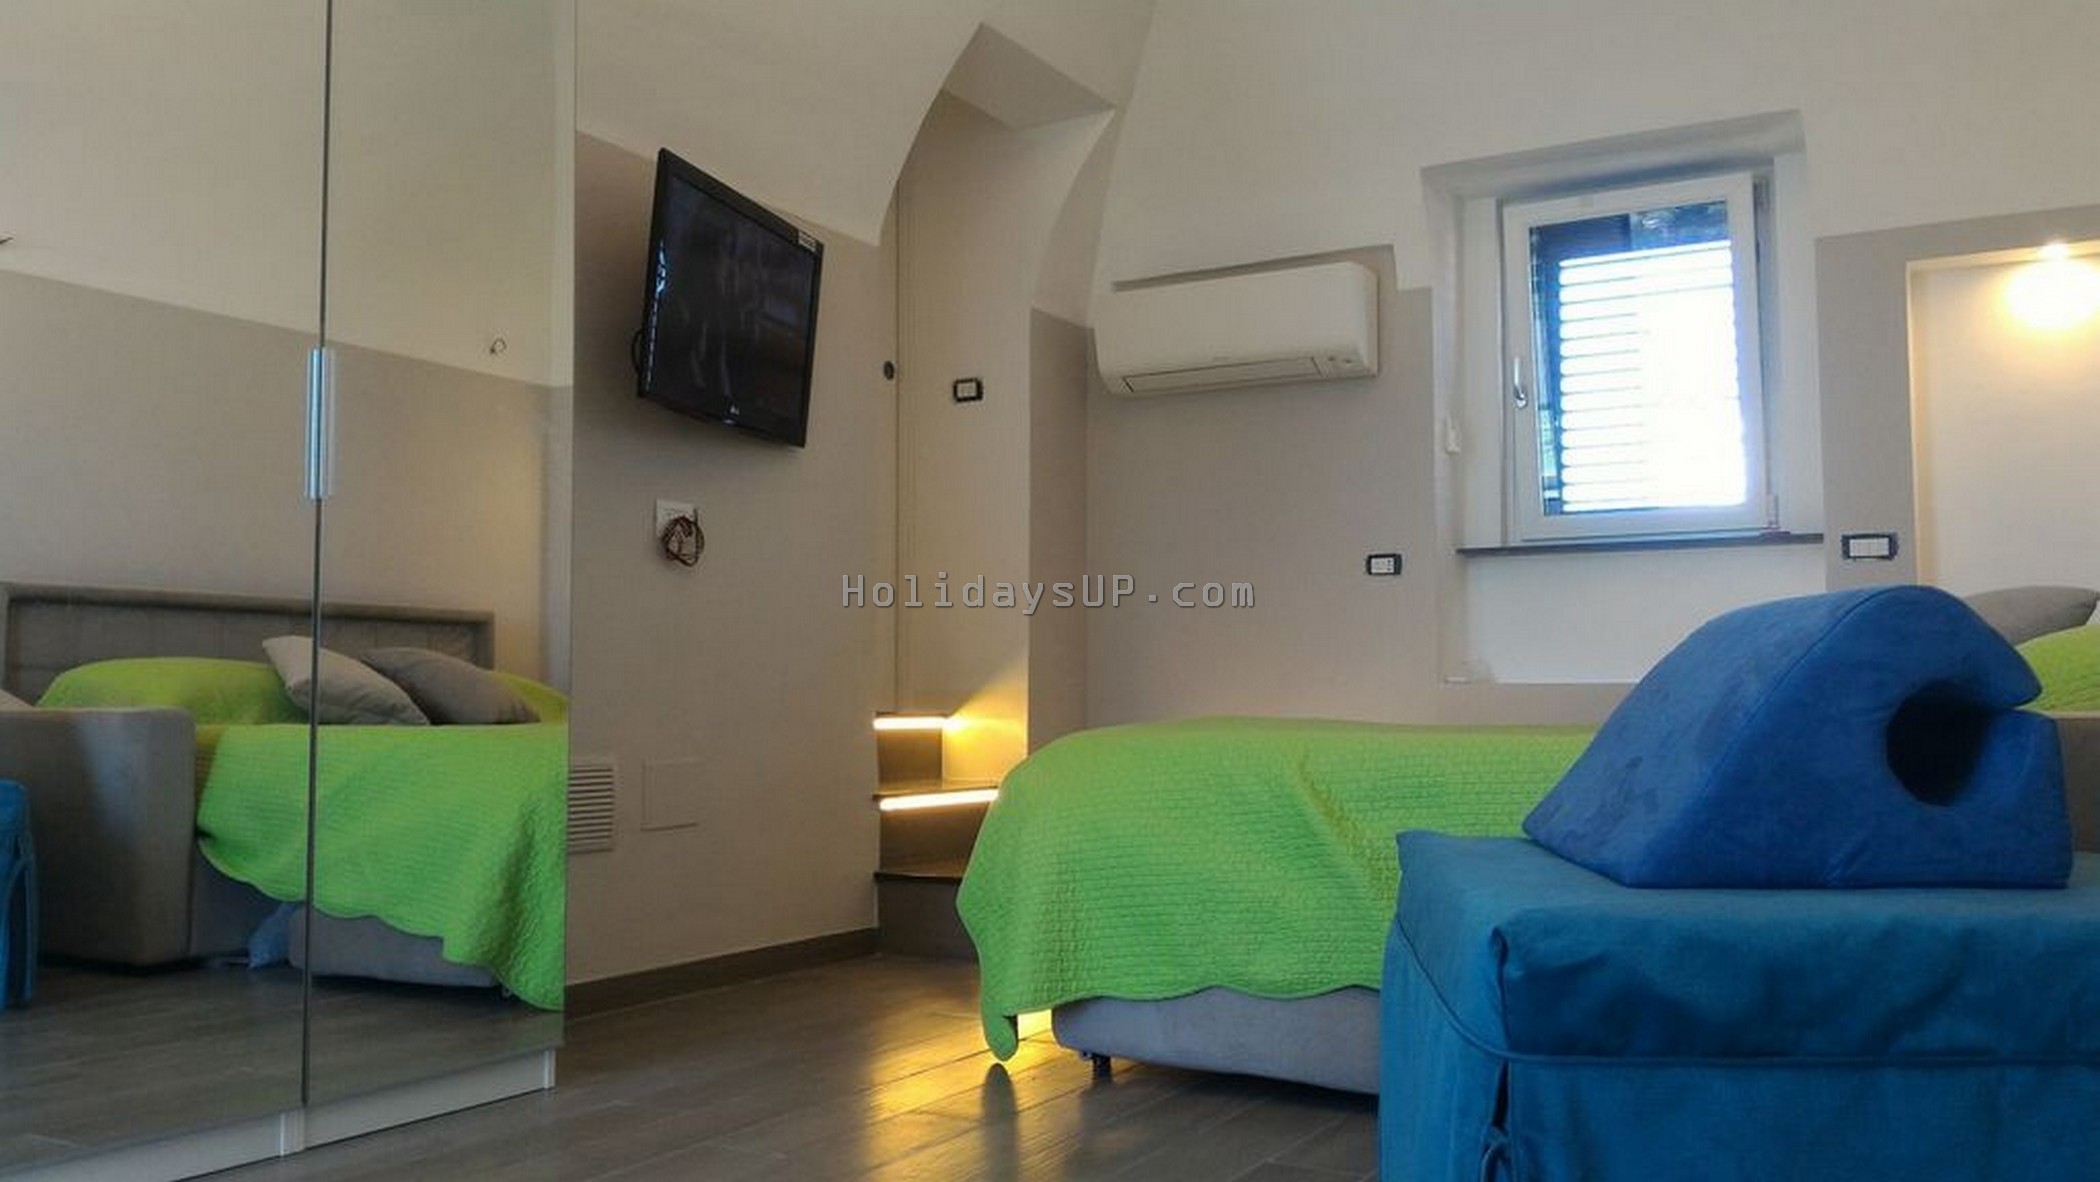 Barones suite room with all facilties in Schiazzano - Massa Lubrense vacation